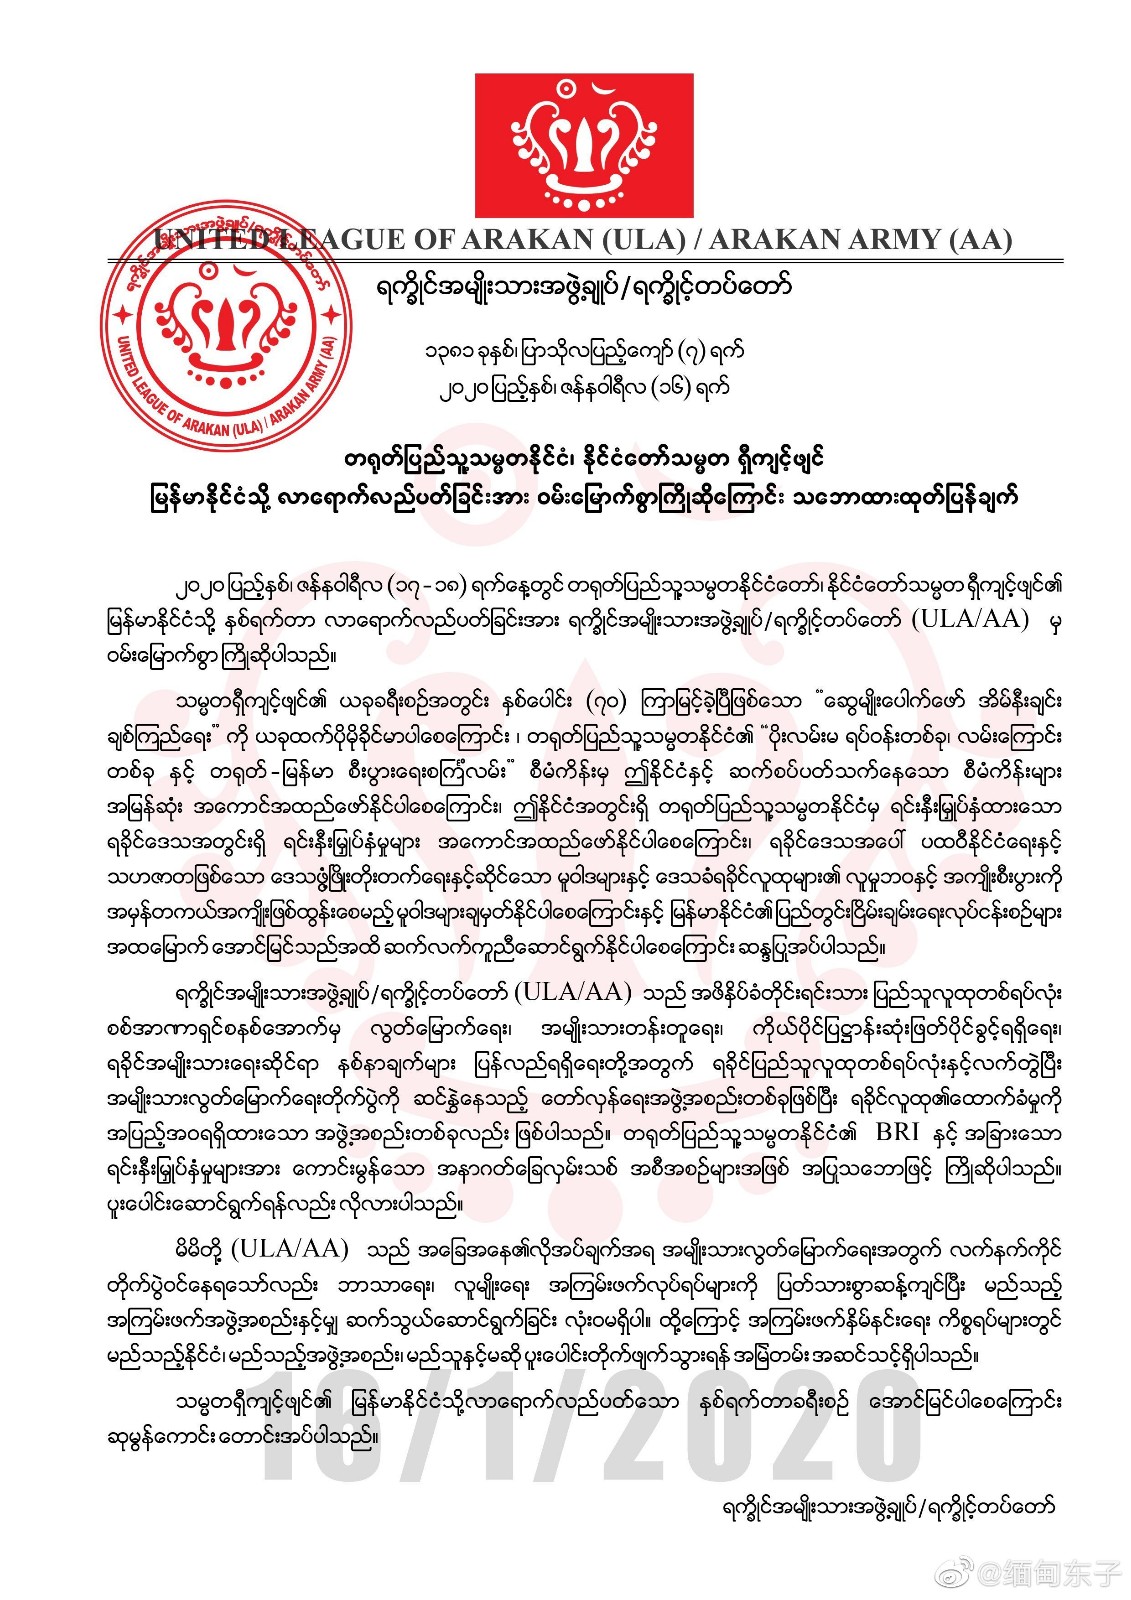 若开民族组织发表声明欢迎习近平主席访问缅甸